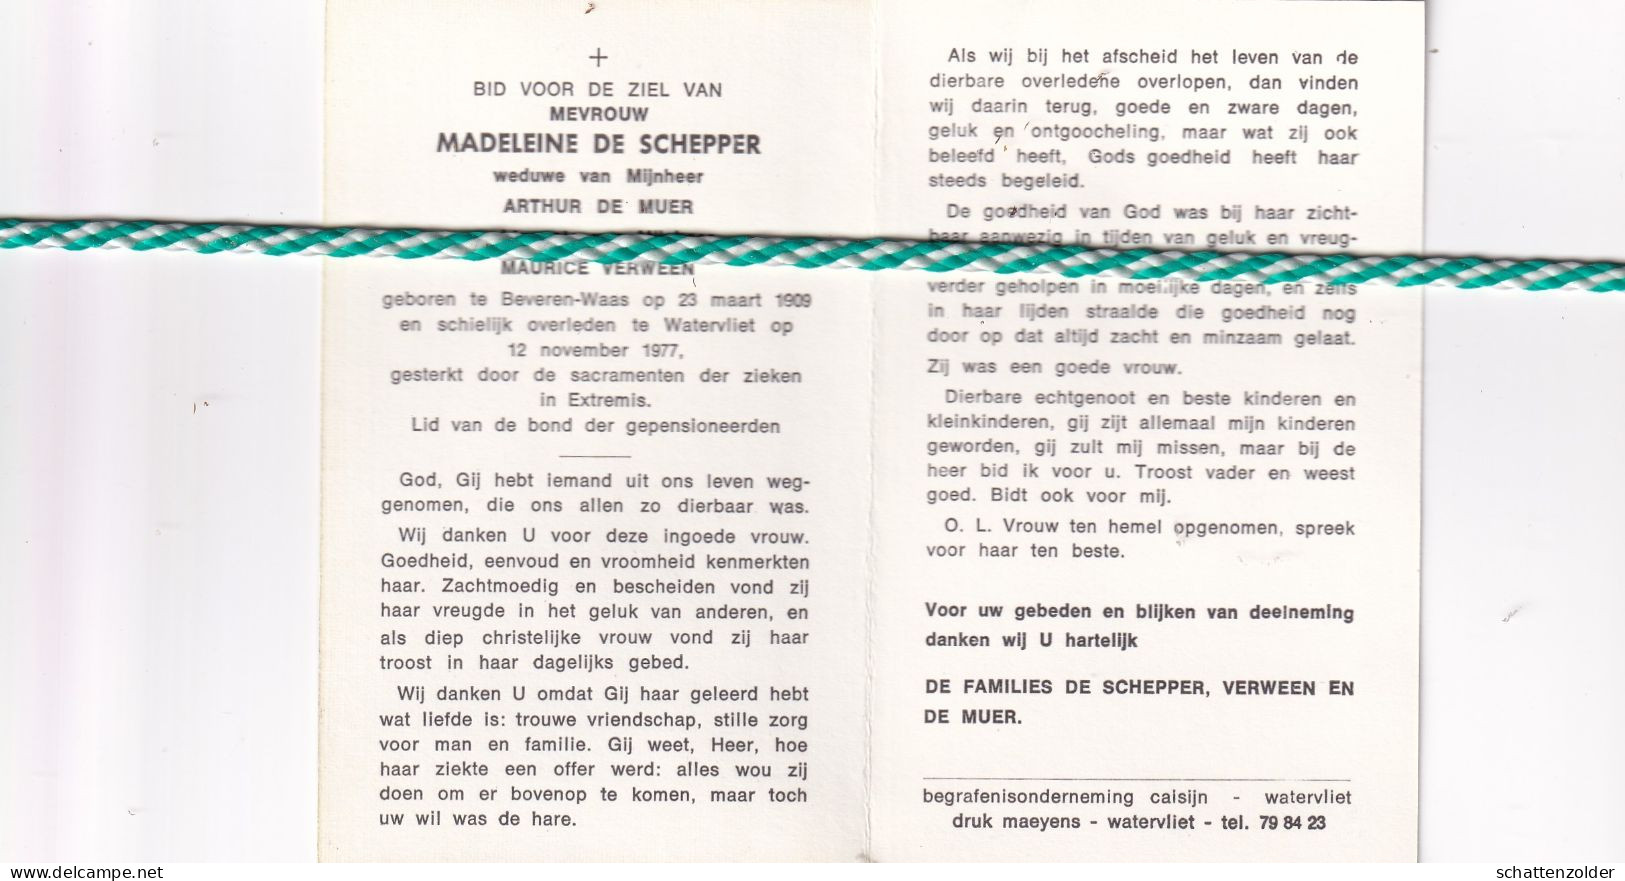 Madeleine De Schepper-De Muer-Verween, Beveren-Waas 1909, Watervliet 1977 - Décès